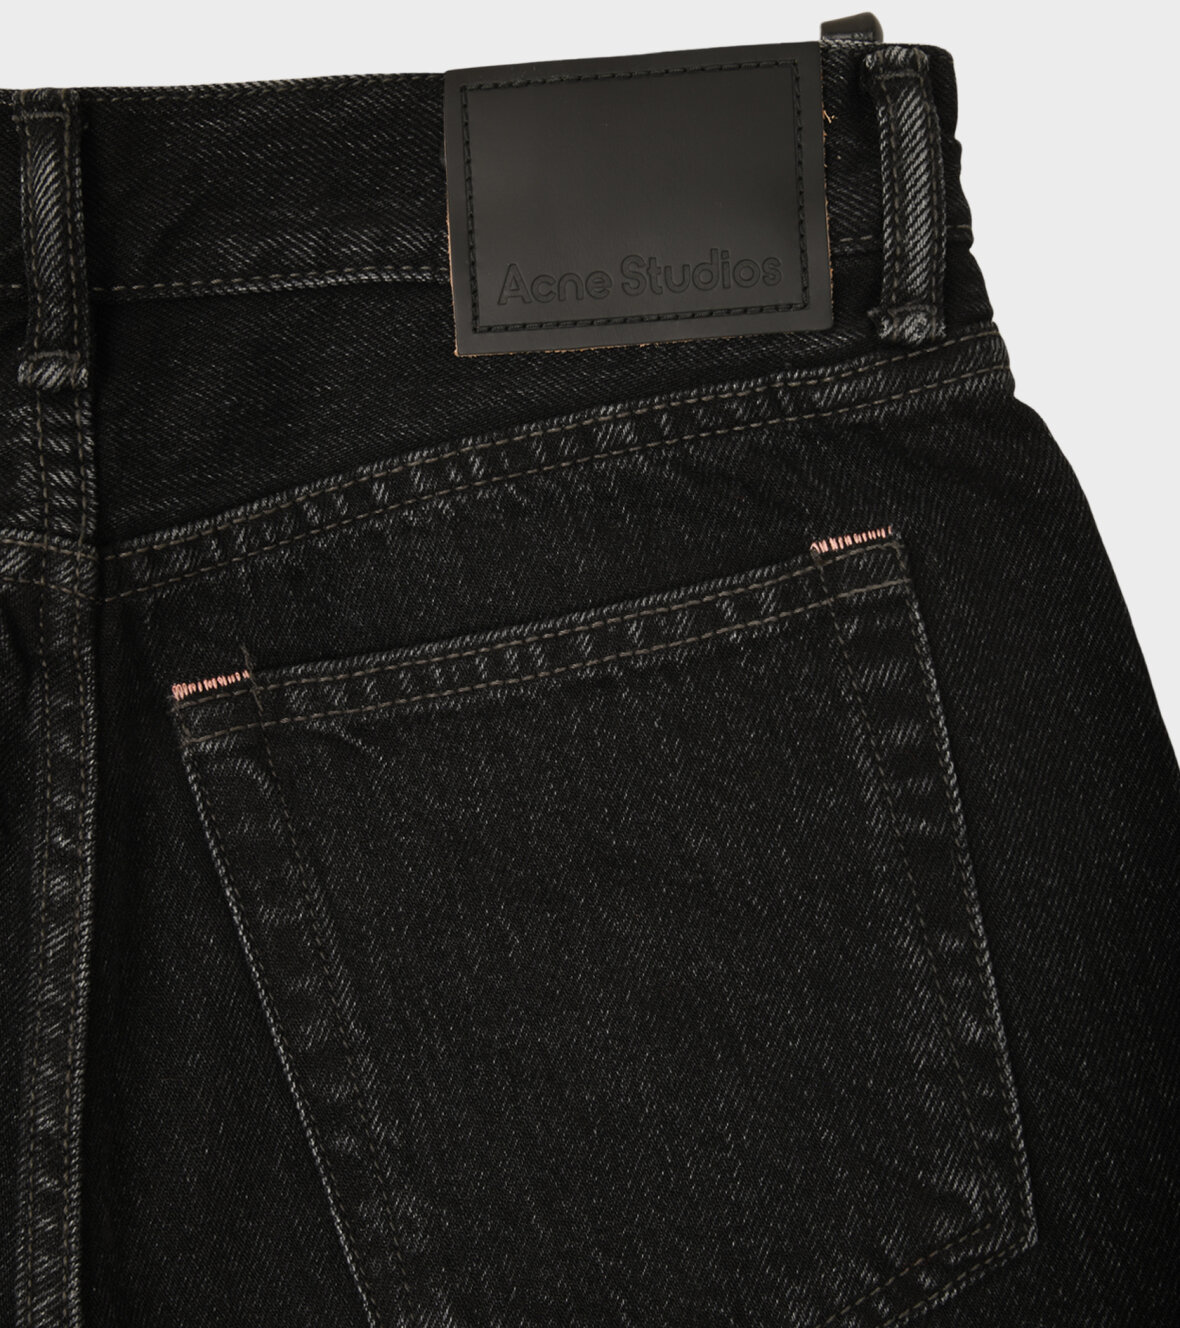 George Bernard protein kurve dr. Adams - Acne Studios Loose Bootcut Jeans Vintage Black